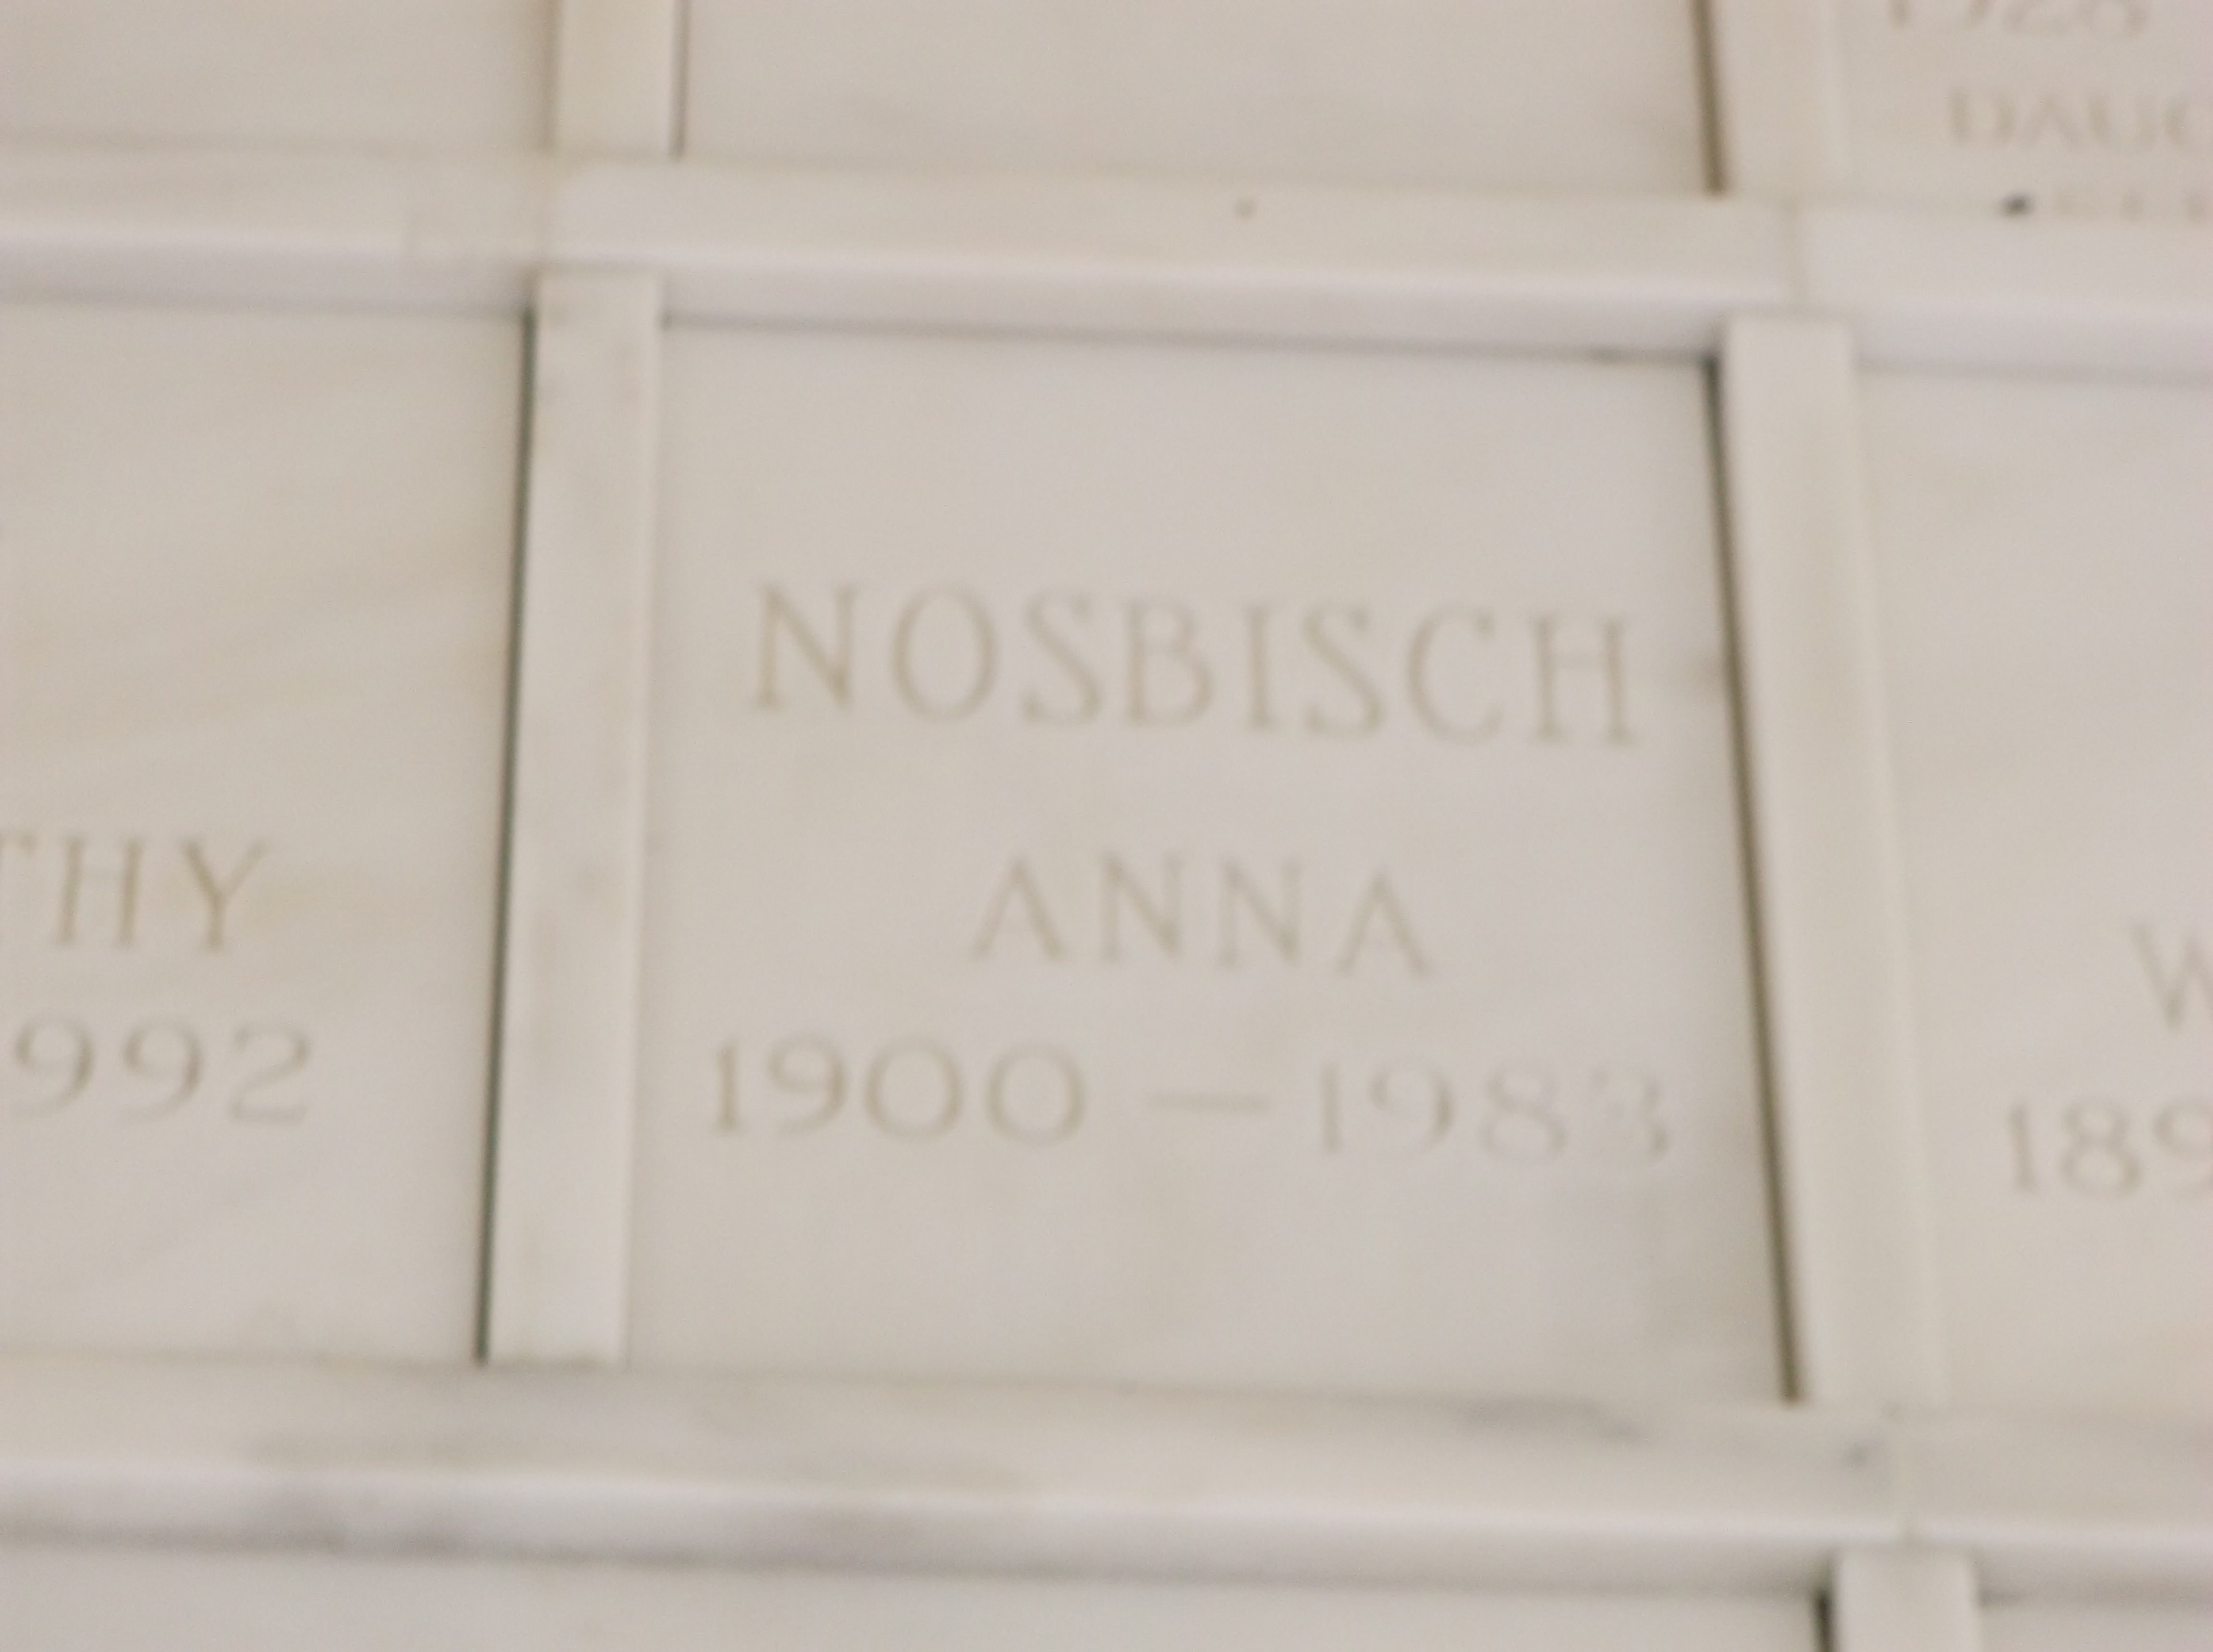 Anna Nosbisch